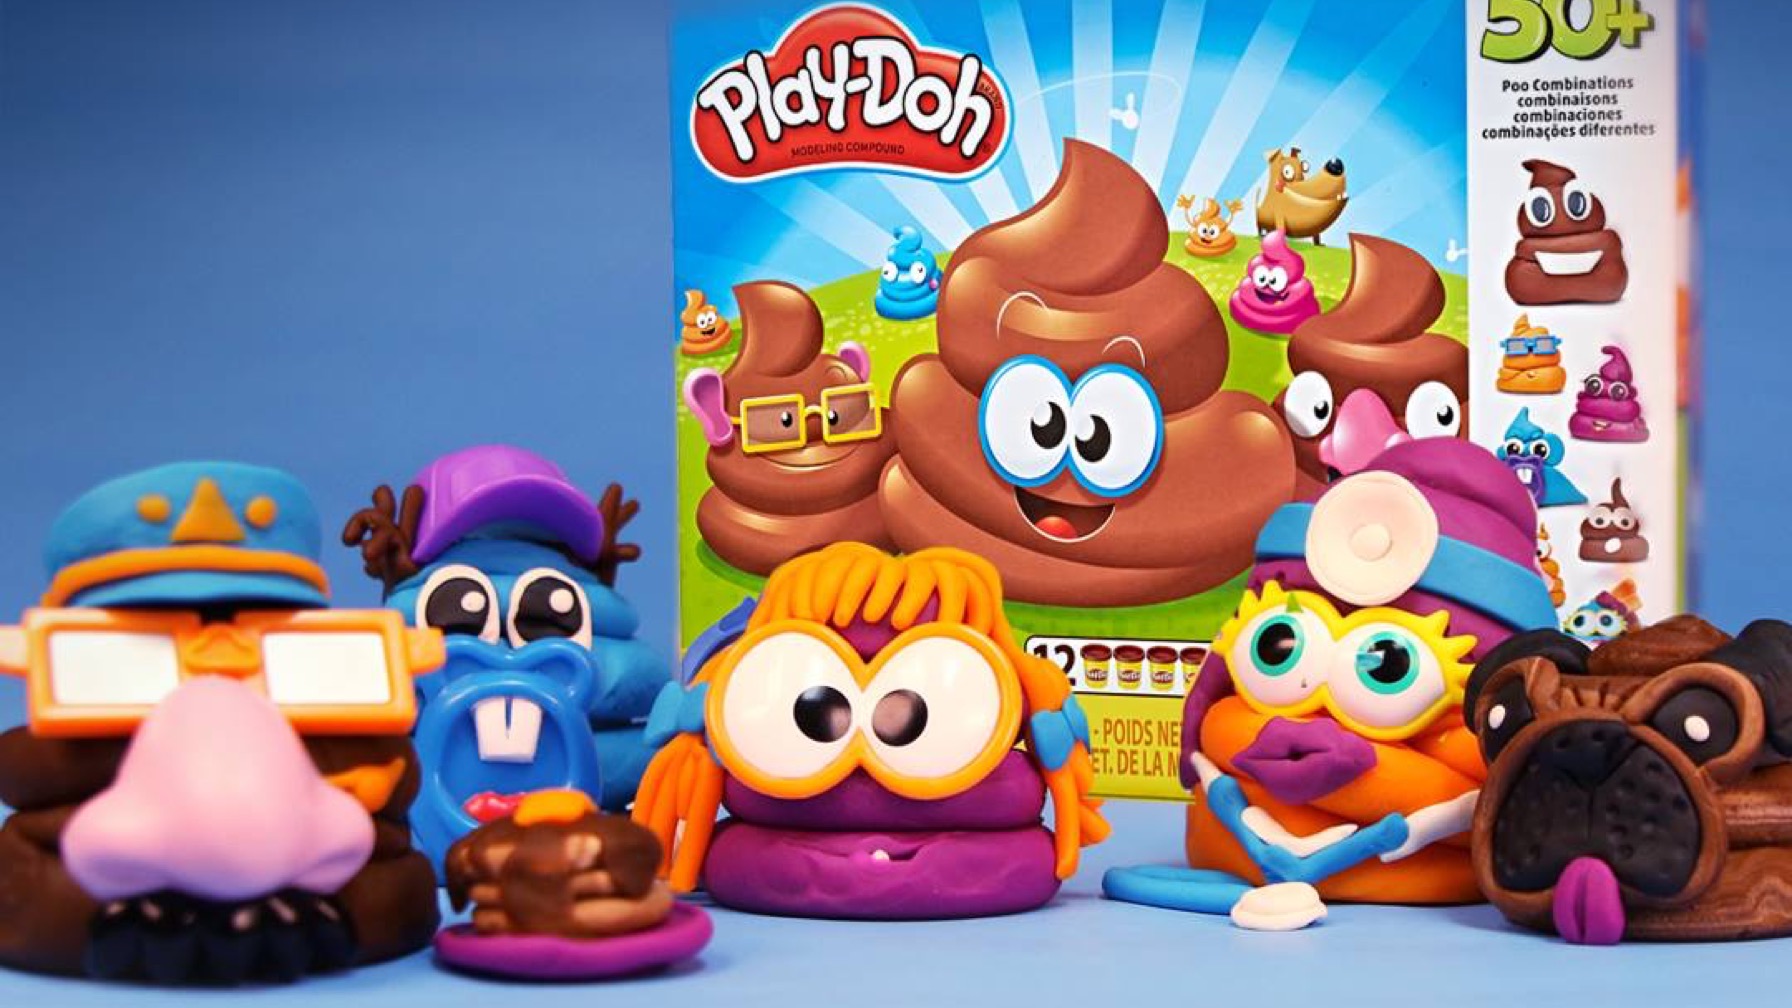 Play-Doh Drops a Deuce Inspired Play Set Called The "Poop Troop"